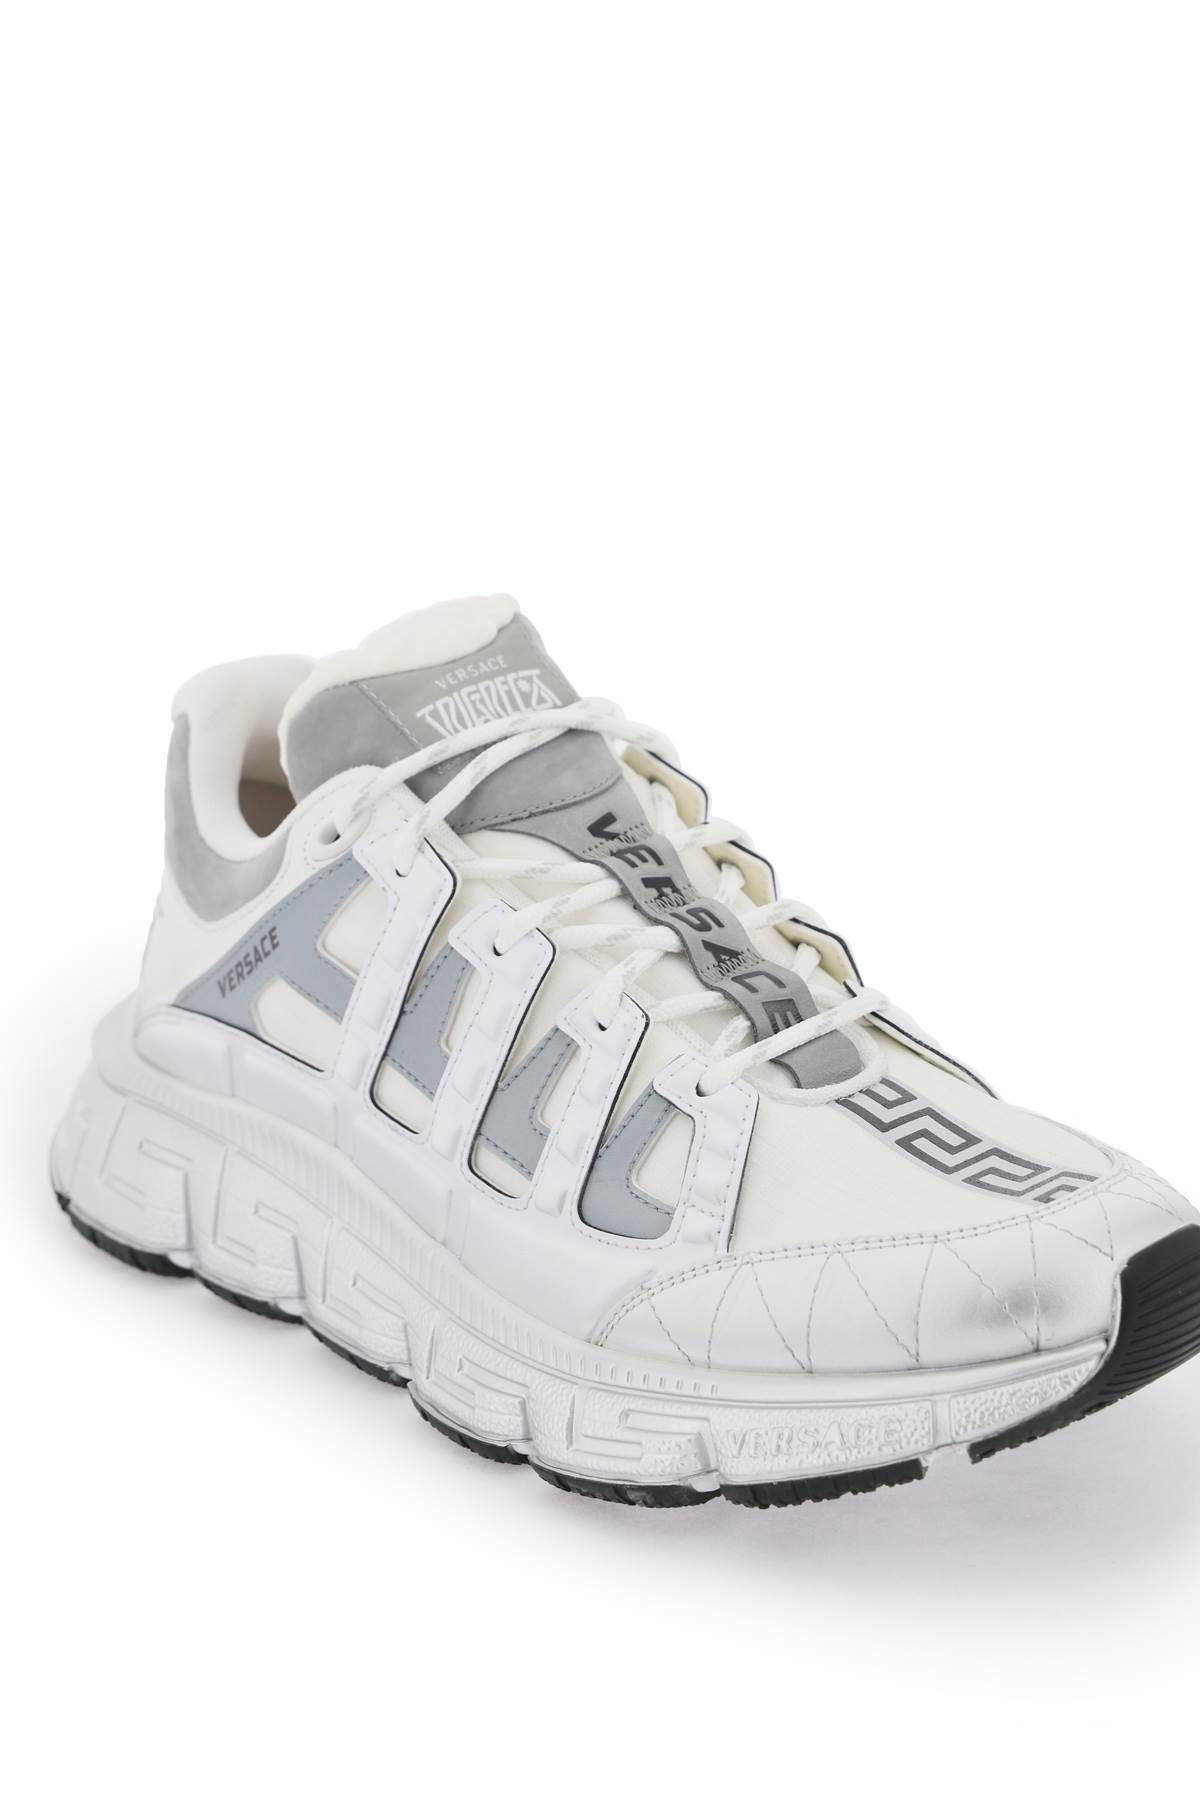 Shop Versace Trigreca Sneakers In Bianco/argento